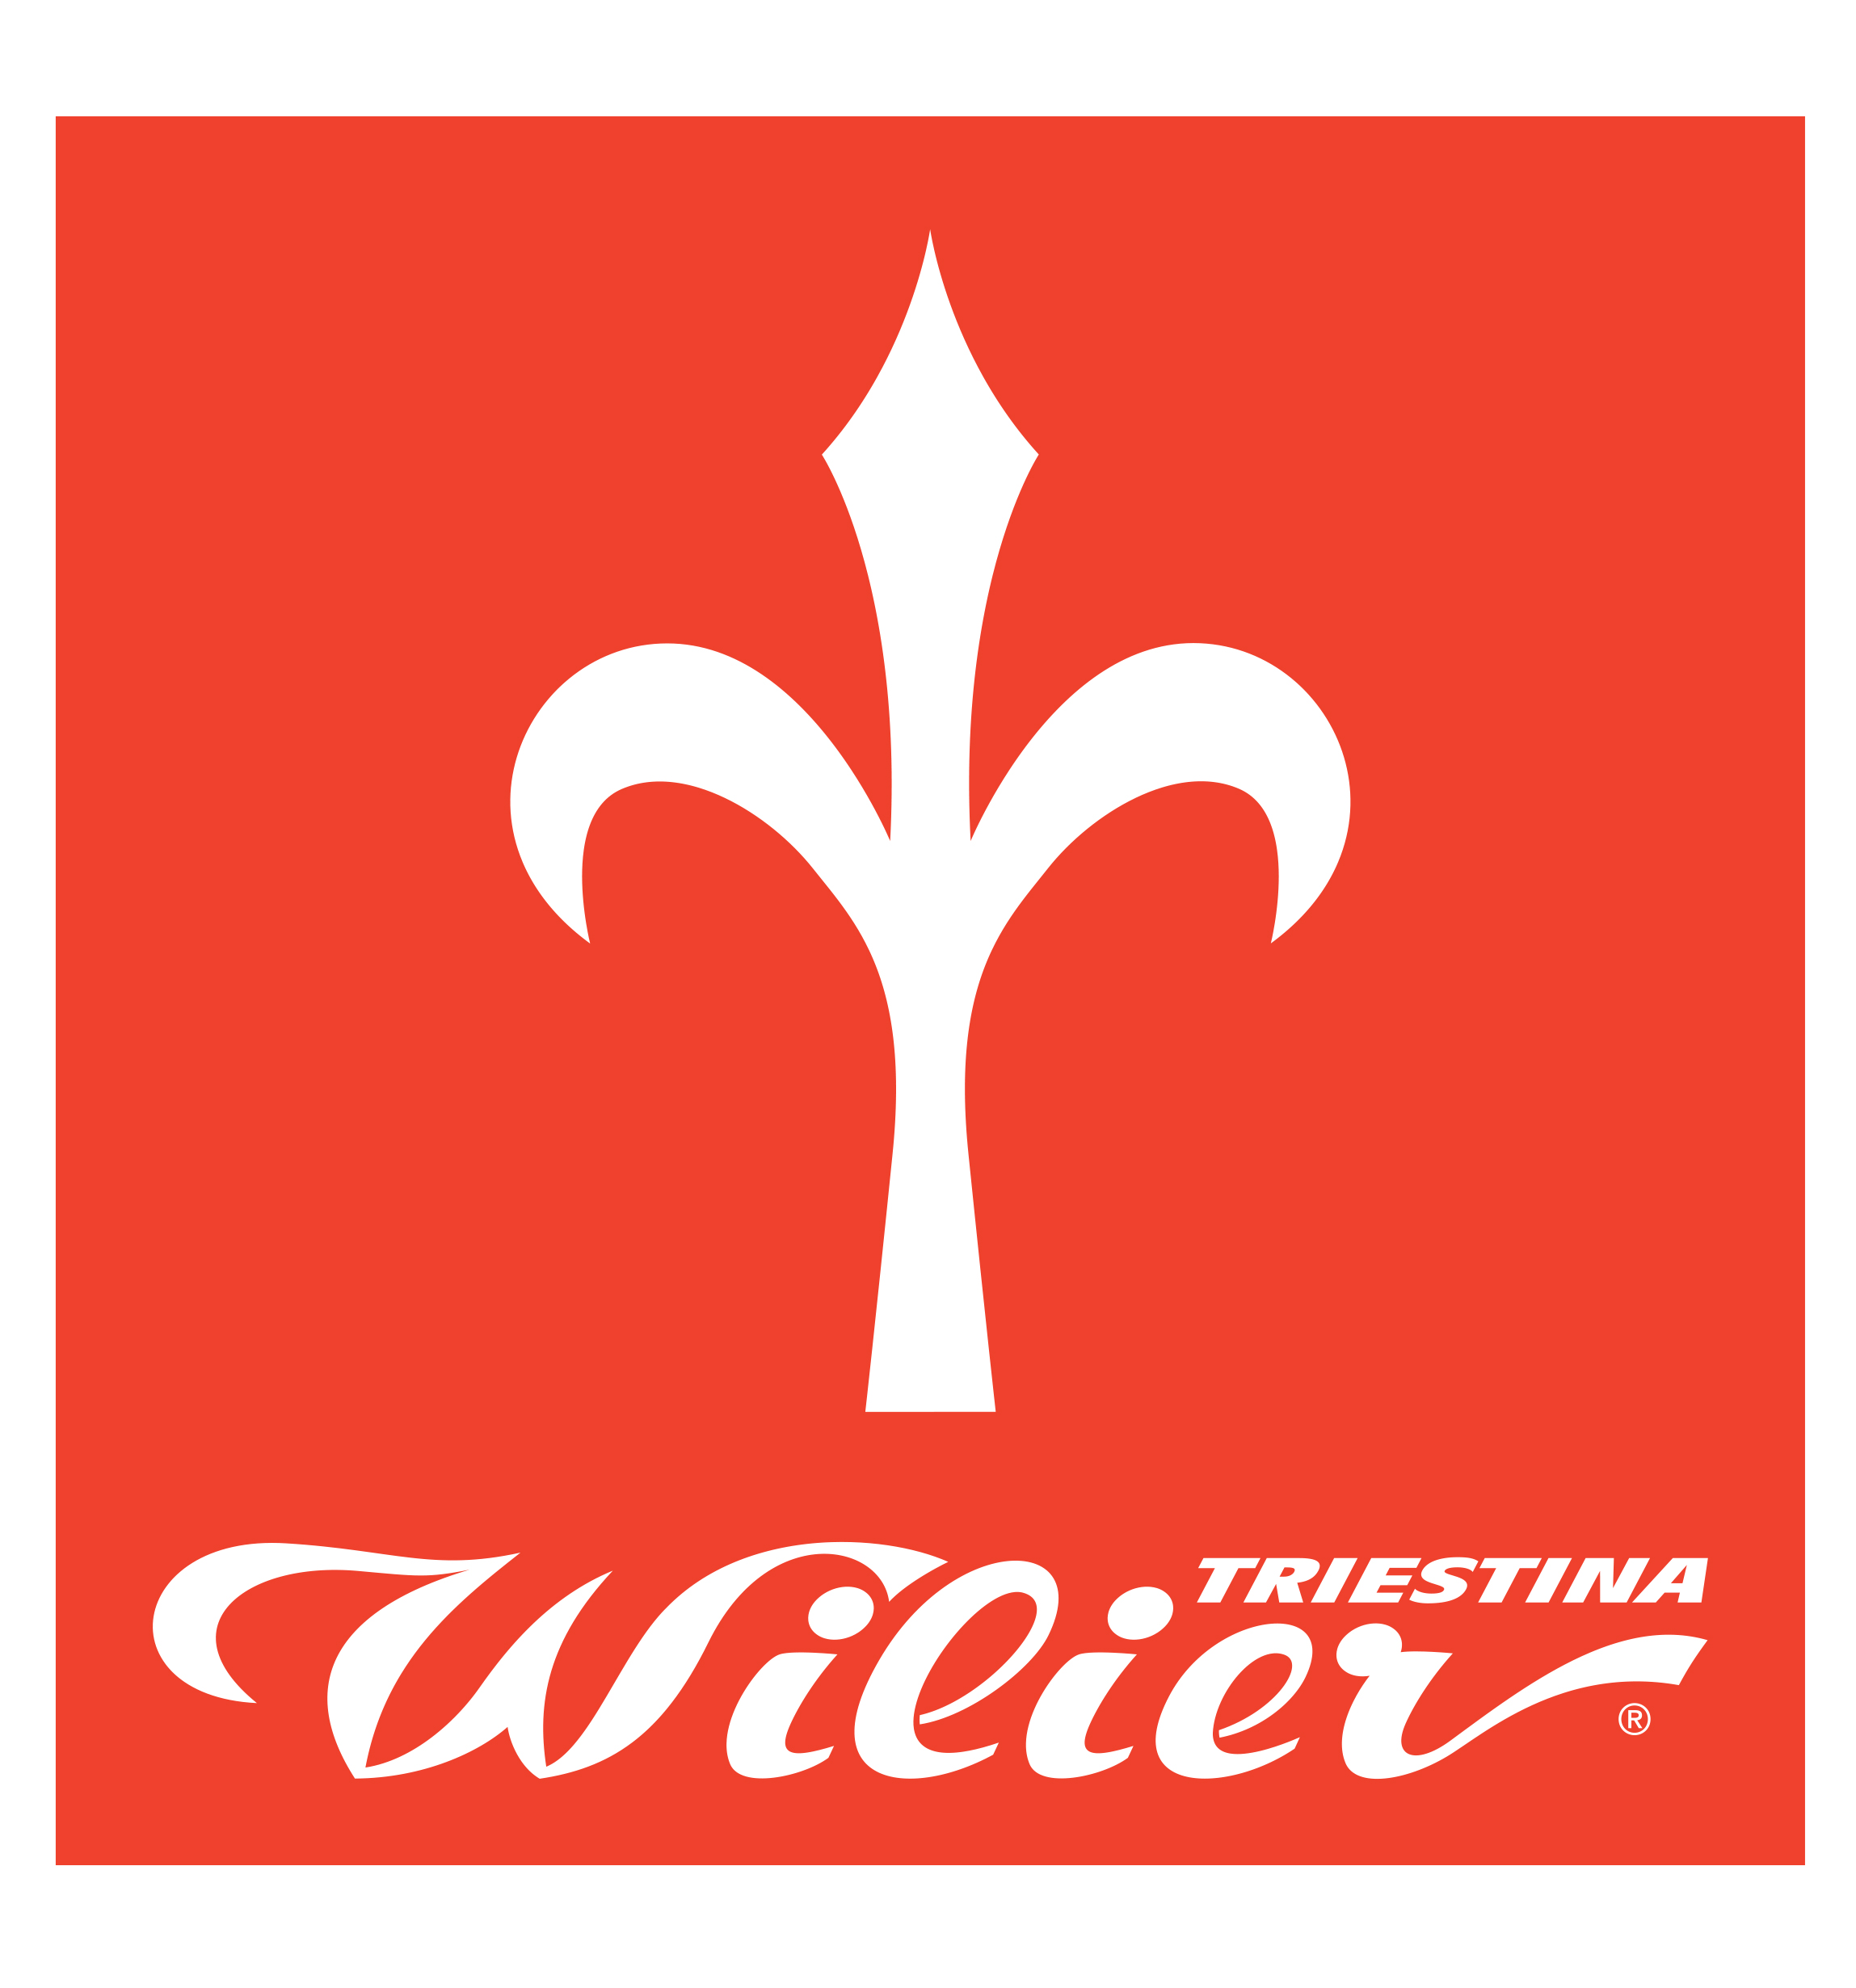 Bici da corsa, gravel, mtb, e-bike a pedalata assistita del marchio leader mondiale Wilier Triestina.